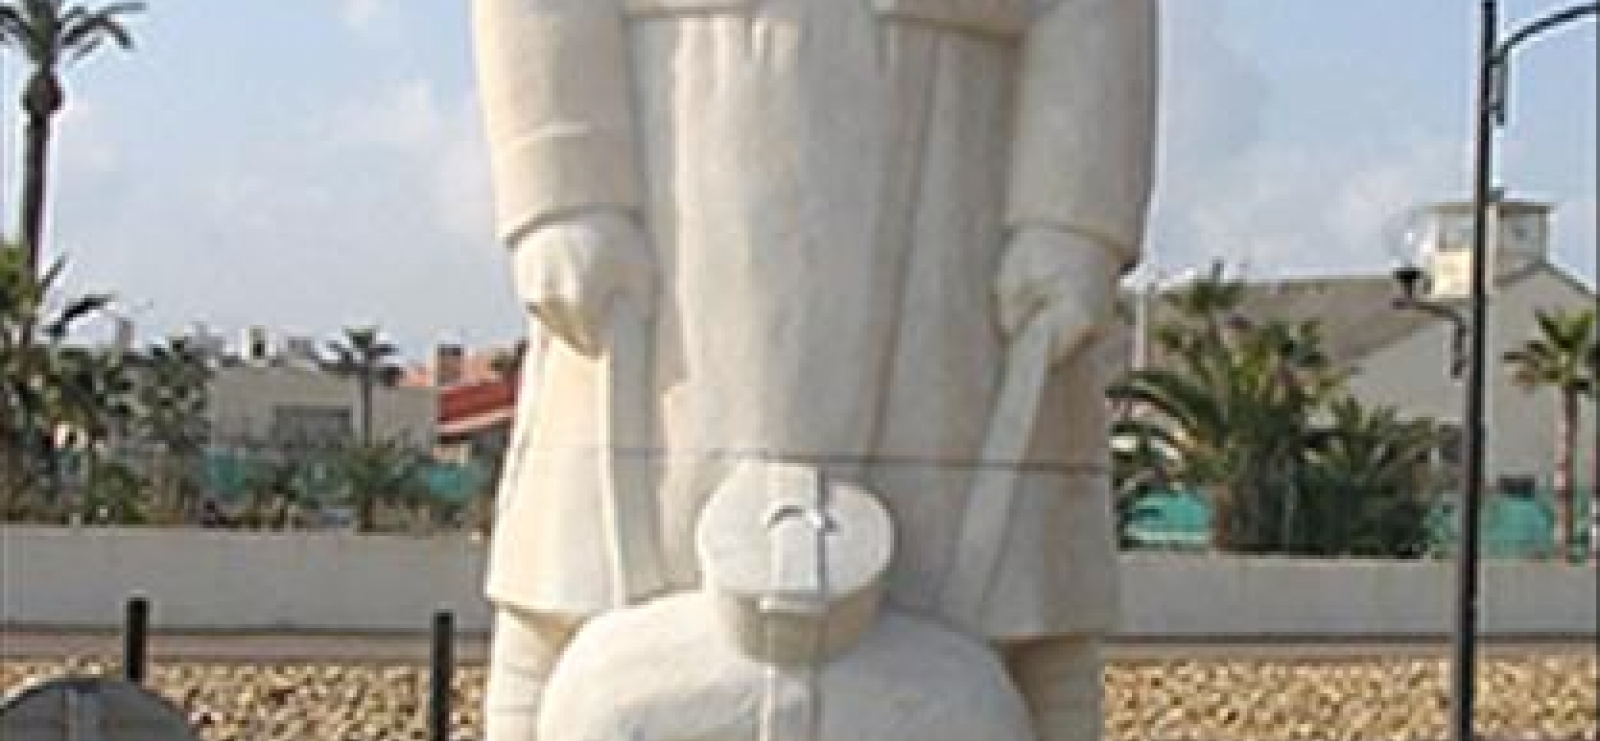 Monument aux morts de Hammam Bou Hadjar